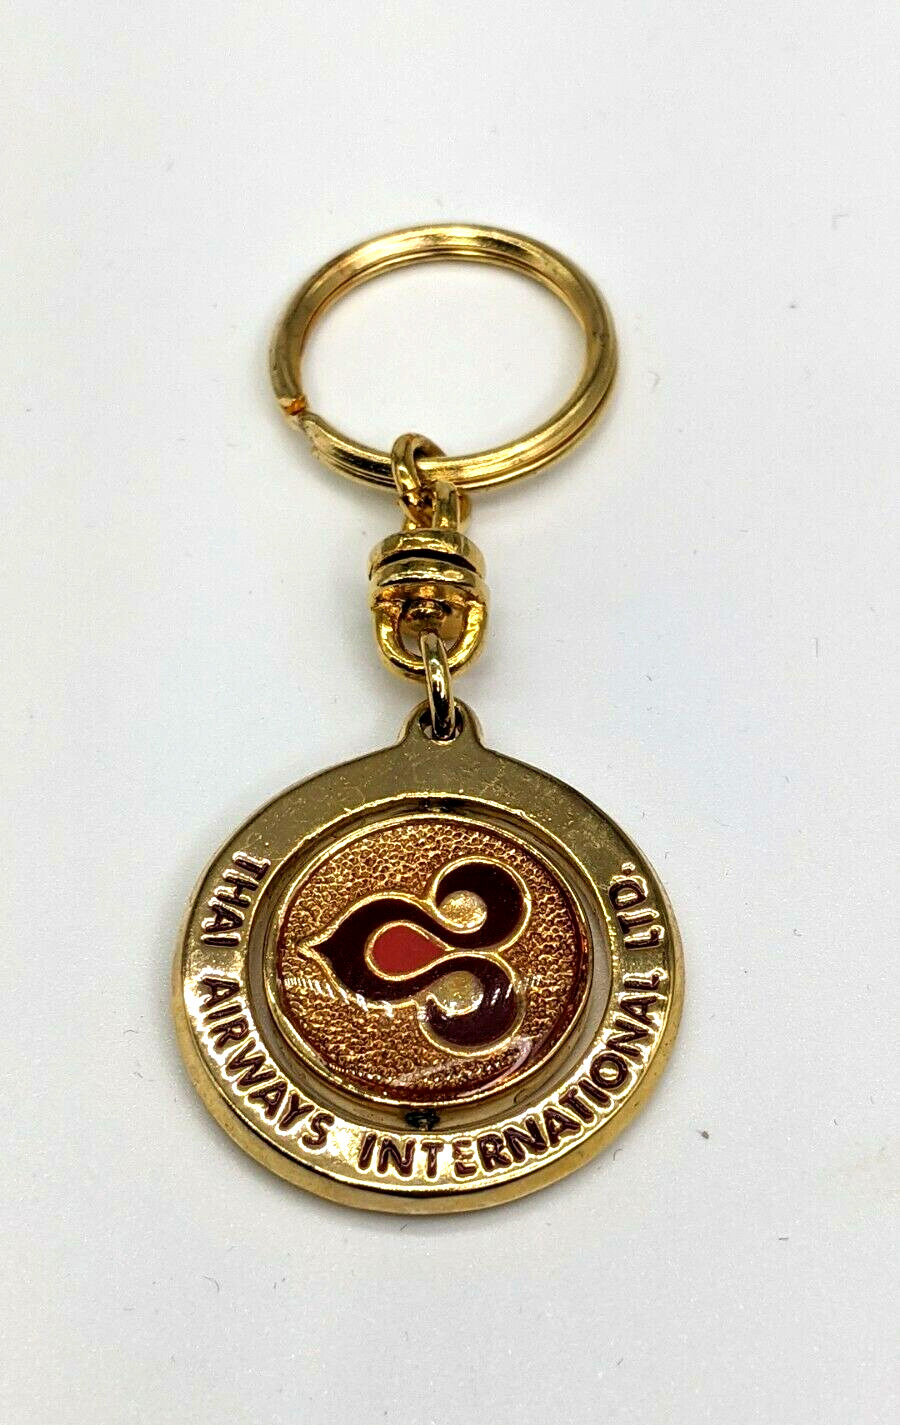 Vintage Thai Airways Keychain Old Airlines Logo Round Spinning Medallion Keyring